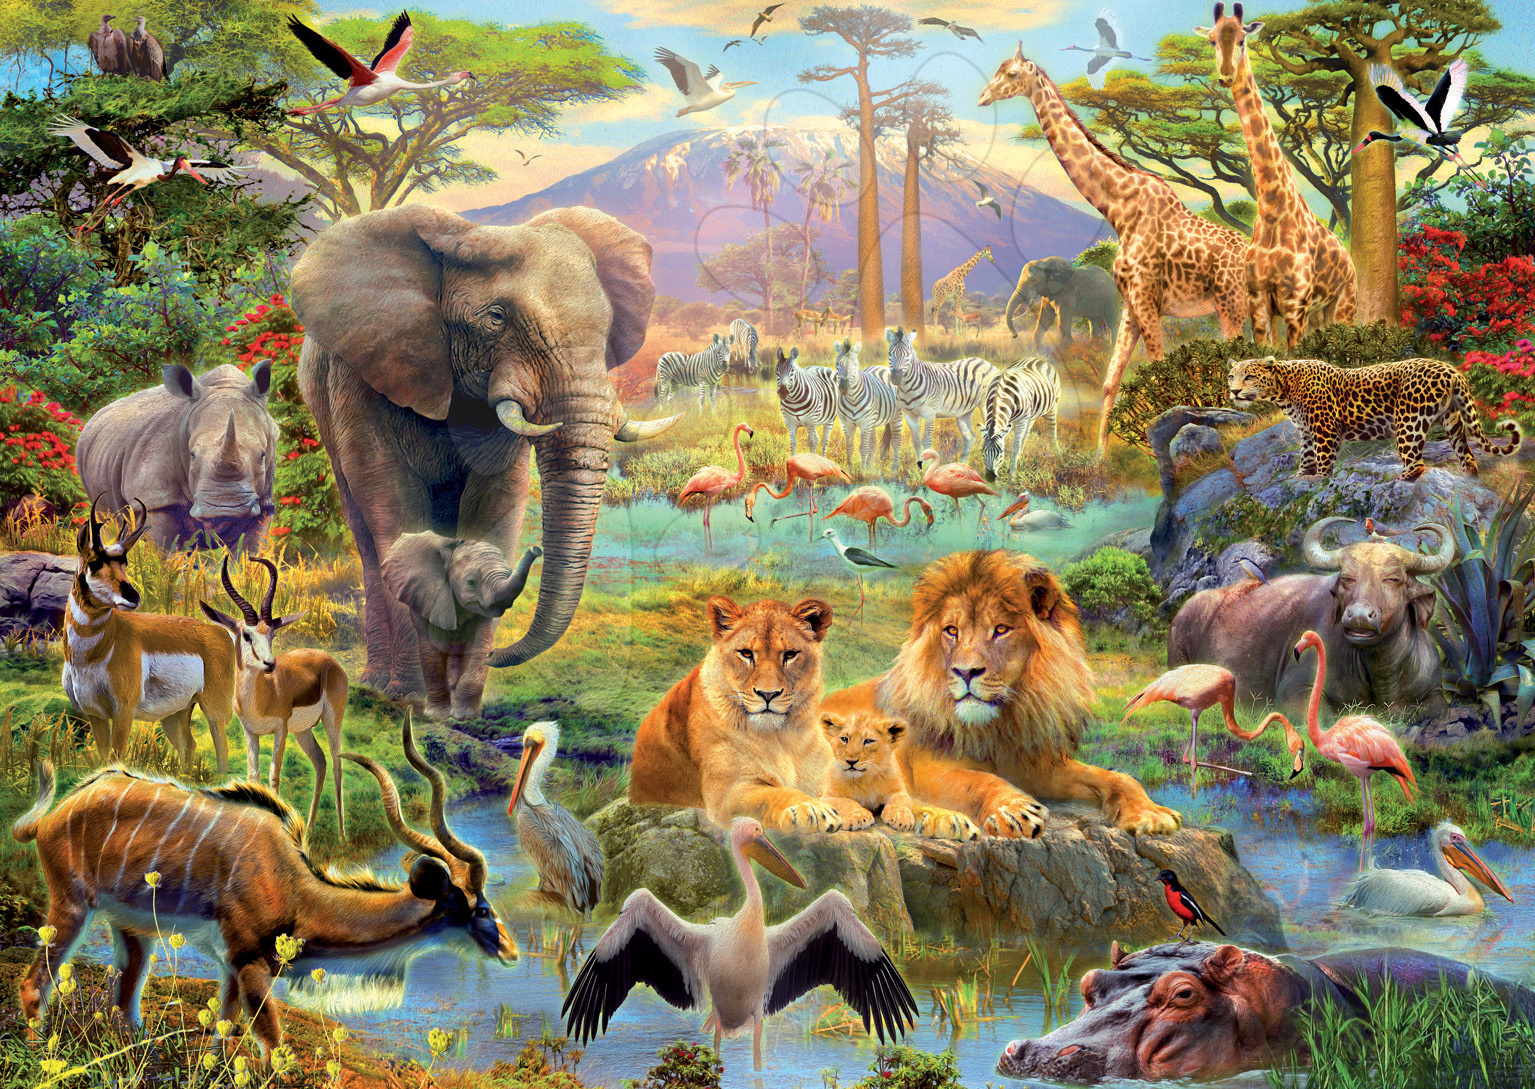 Развлечение в мире животных. Пазл Саванна Educa. Пазл Ravensburger джунгли (16610), 2000 дет.. Африка пустыня Саванна джунгли. Много животных.